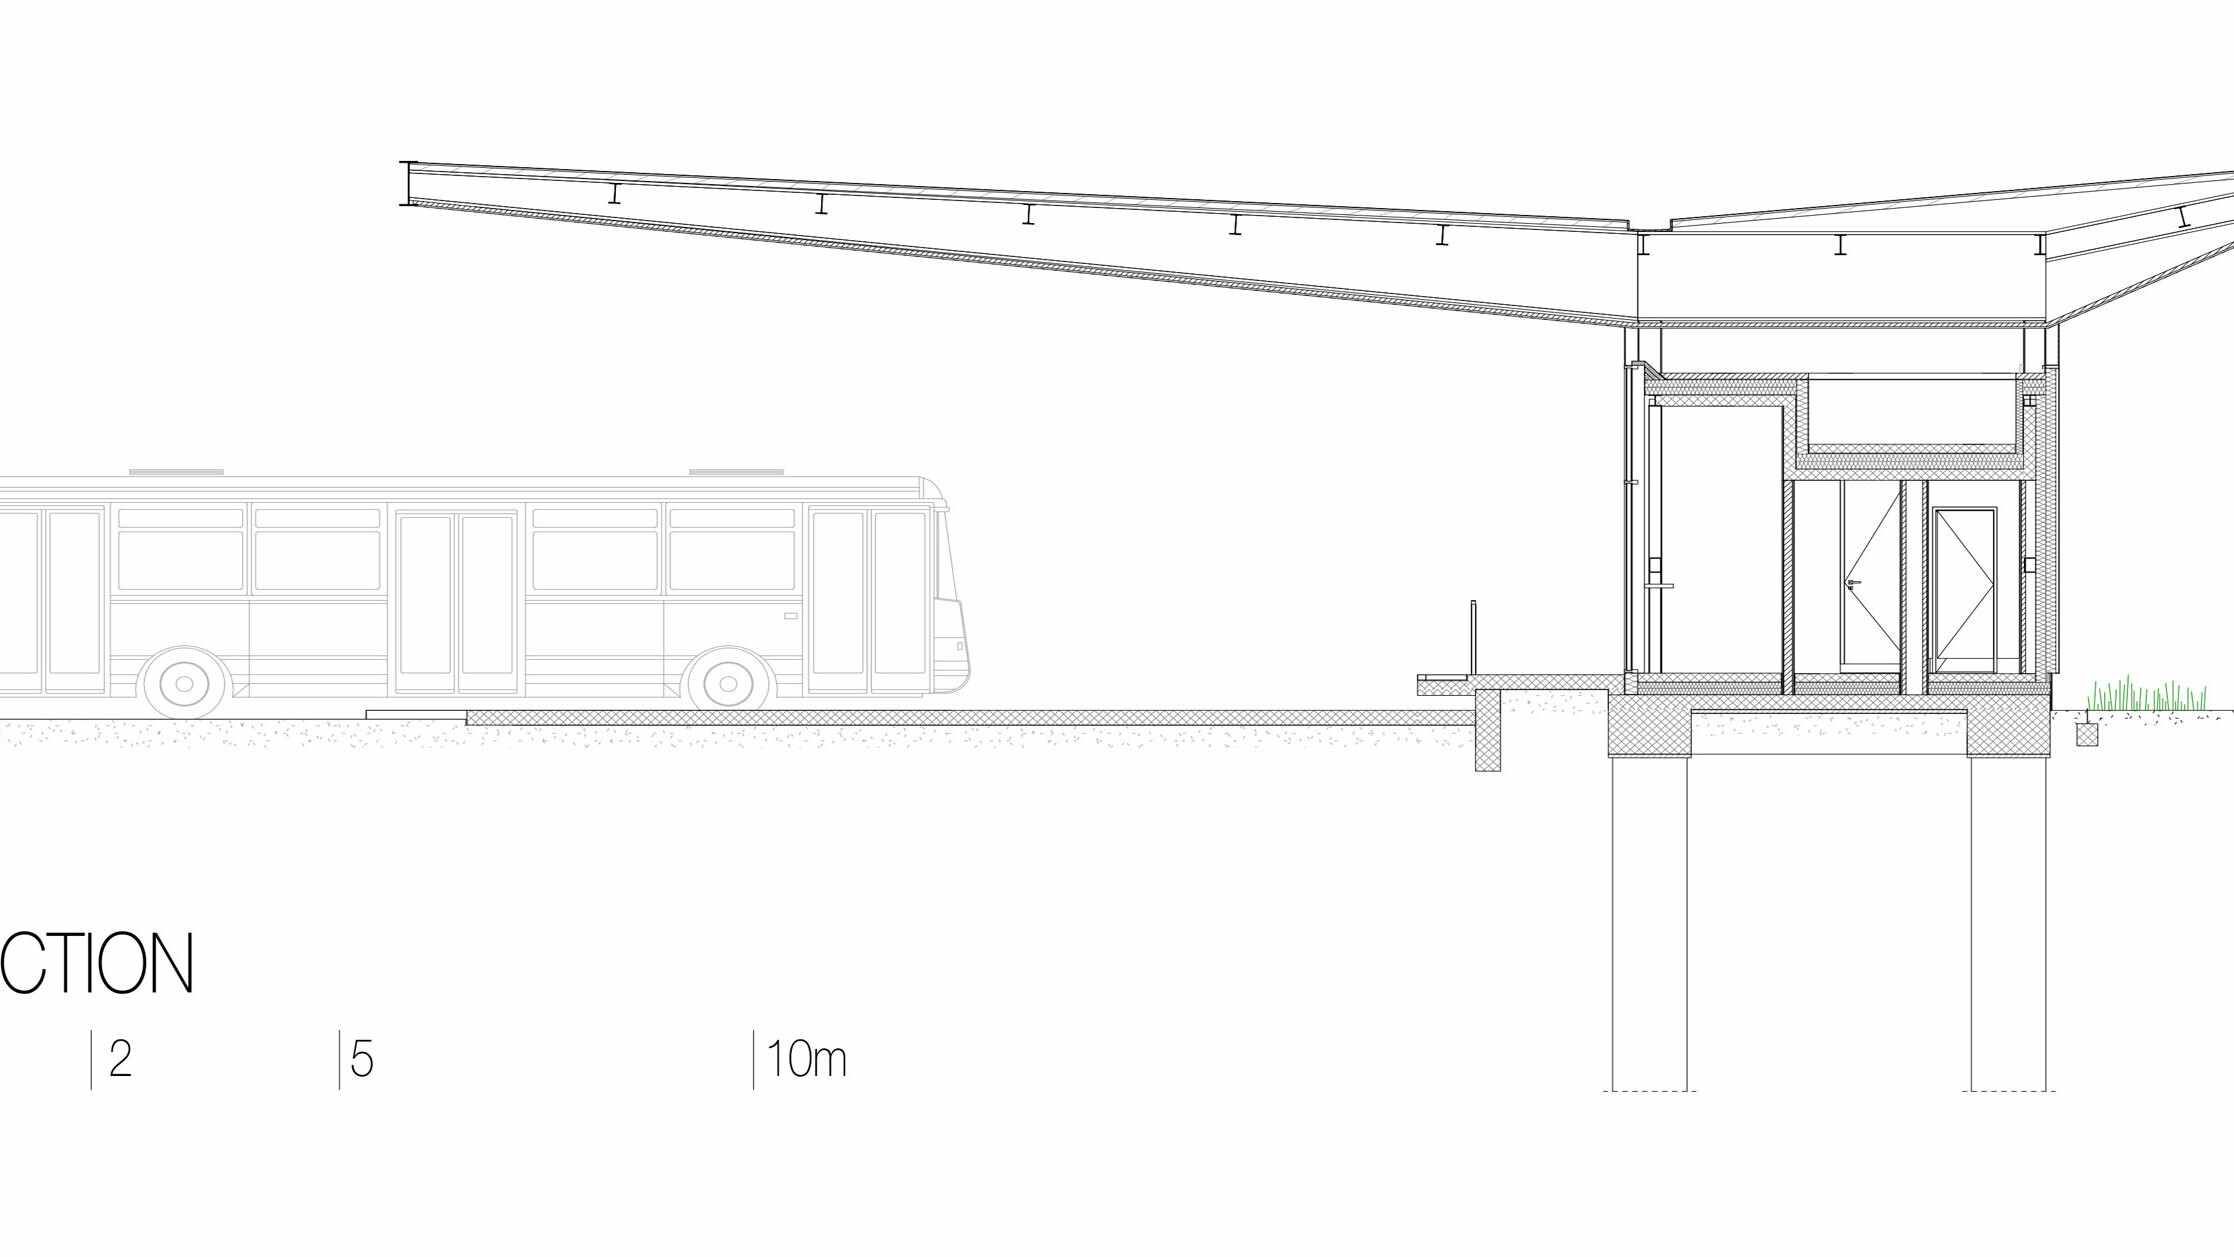 Il disegno mostra una sezione trasversale della stazione ”Autobusni Kolodvor Slavonski Brod” in Croazia. La sezione illustra la costruzione dell’edificio, compreso il tetto Prefalz bianco di PREFA, che poggia su sottili colonne e sporge molto al di sopra delle aree sottostanti. Sotto il tetto si trovano gli spazi interni della stazione, con linee chiare e ampie superfici vetrate. Il disegno mostra anche la costruzione delle fondamenta e le colonne sotterranee che sostengono la struttura. Sul lato sinistro è raffigurato un autobus che testimonia le proporzioni. La sezione trasversale fa risaltare la costruzione moderna e funzionale della stazione e l’integrazione di vetro e alluminio nel progetto.